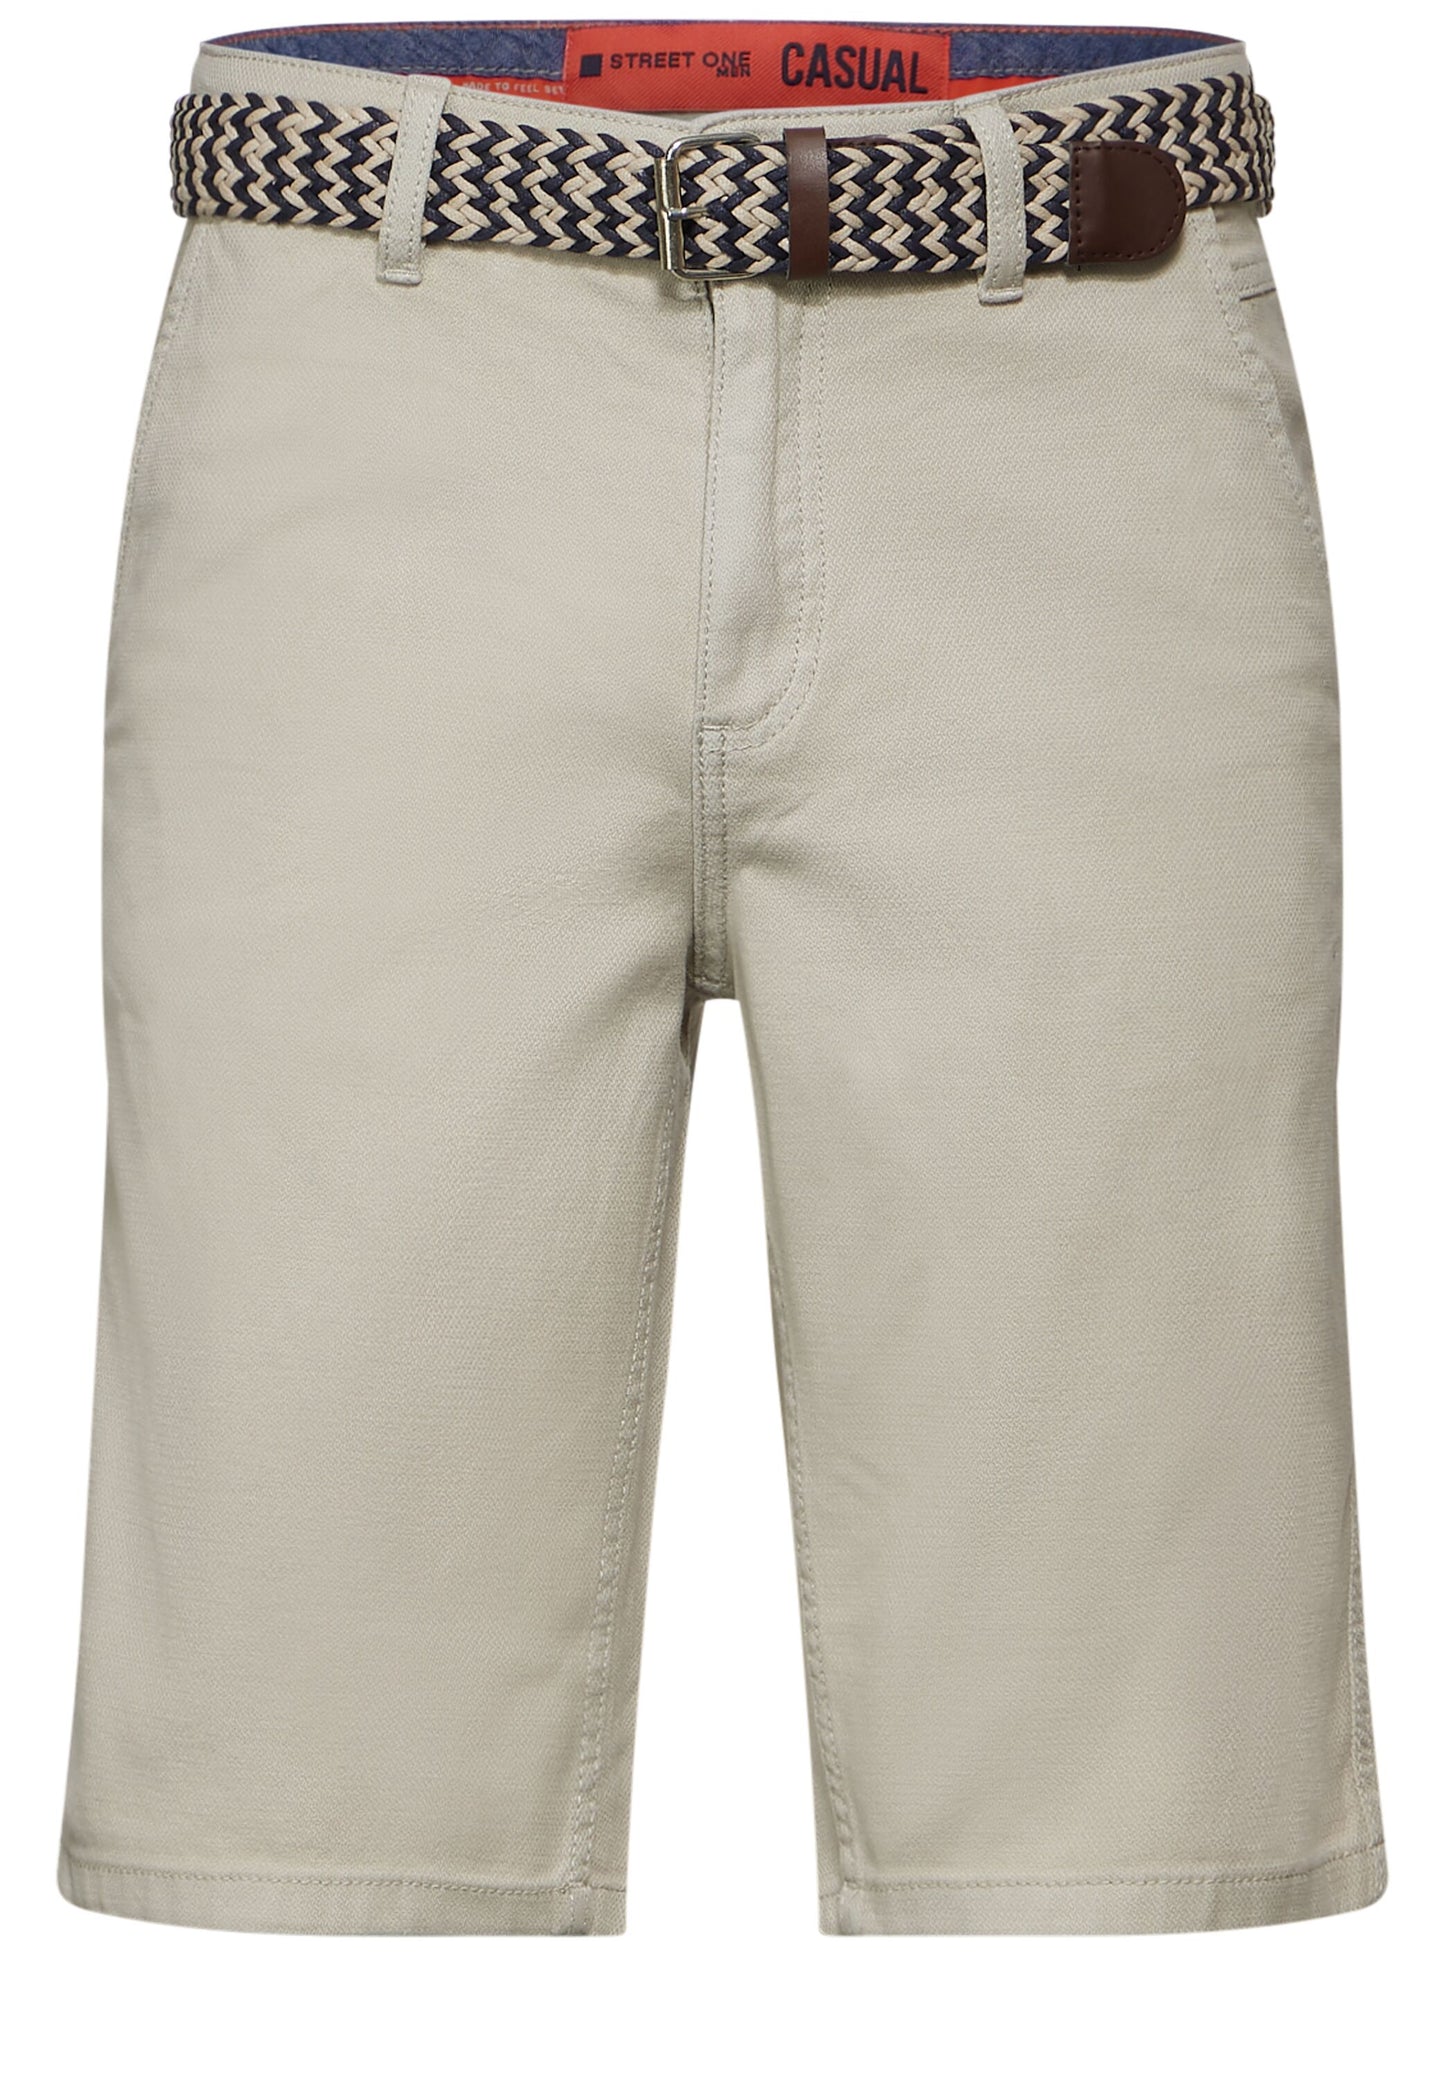 Street One MEN - Herren Chino Shorts mit Gürtel - light sand beige